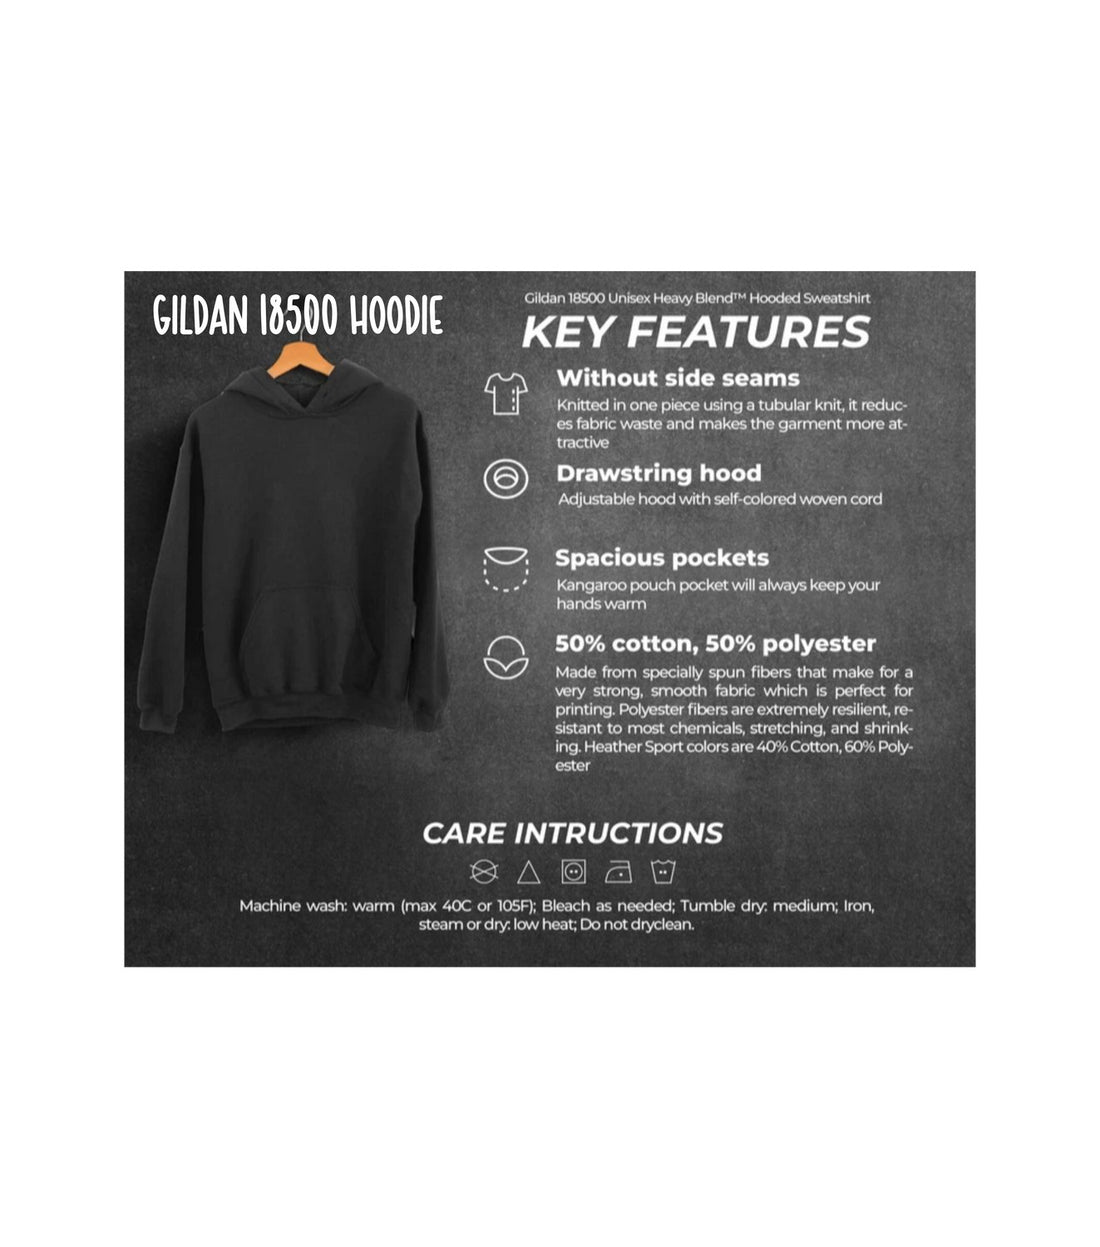 Rock Chalk Block Hooded Sweatshirt - Sweaters/Hoodies - Positively Sassy - Rock Chalk Block Hooded Sweatshirt